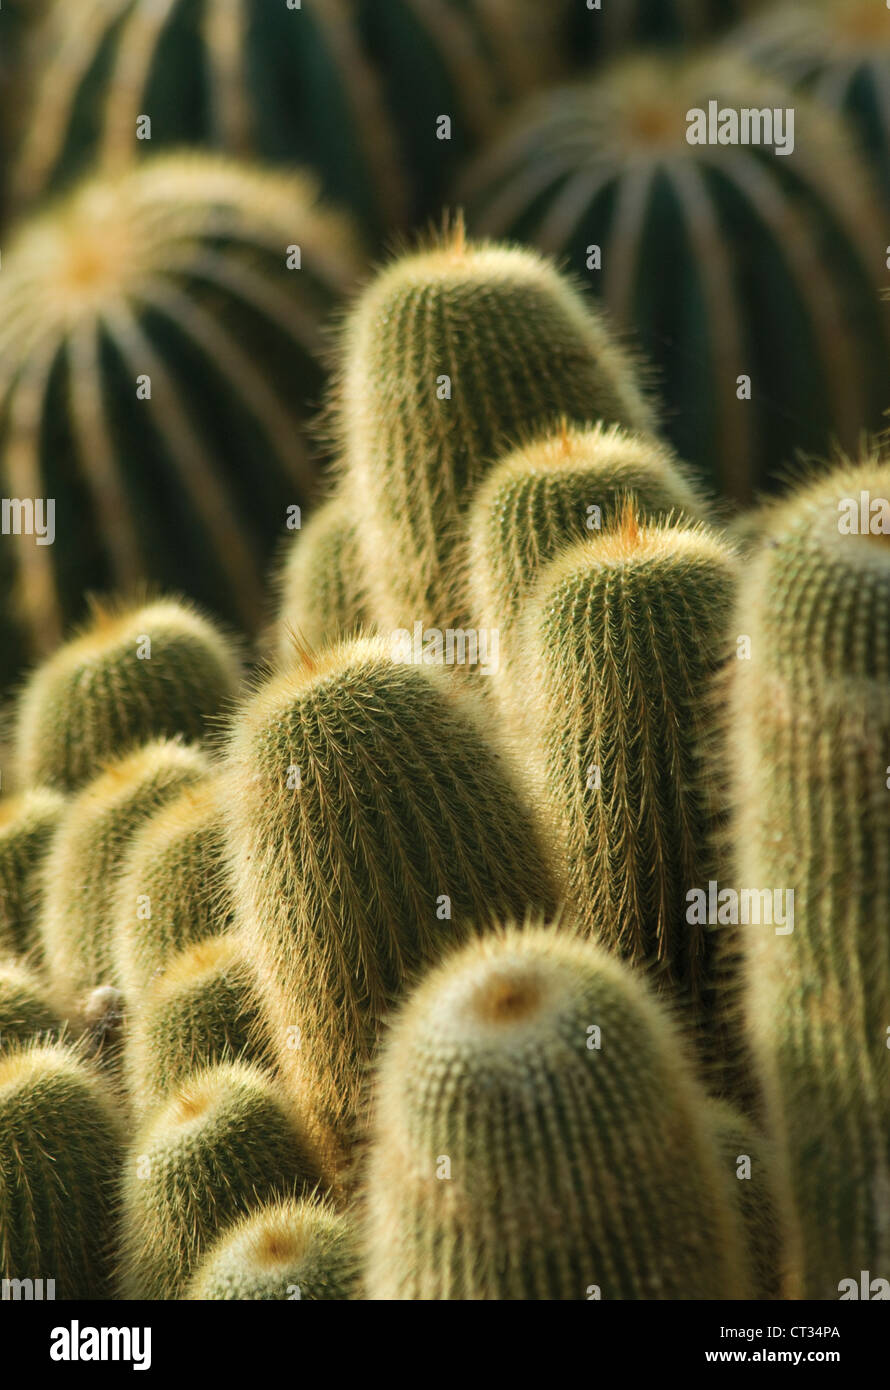 Parodia leninghausii torre amarilla, cactus, plantas suculentas masificada en vertical. Foto de stock